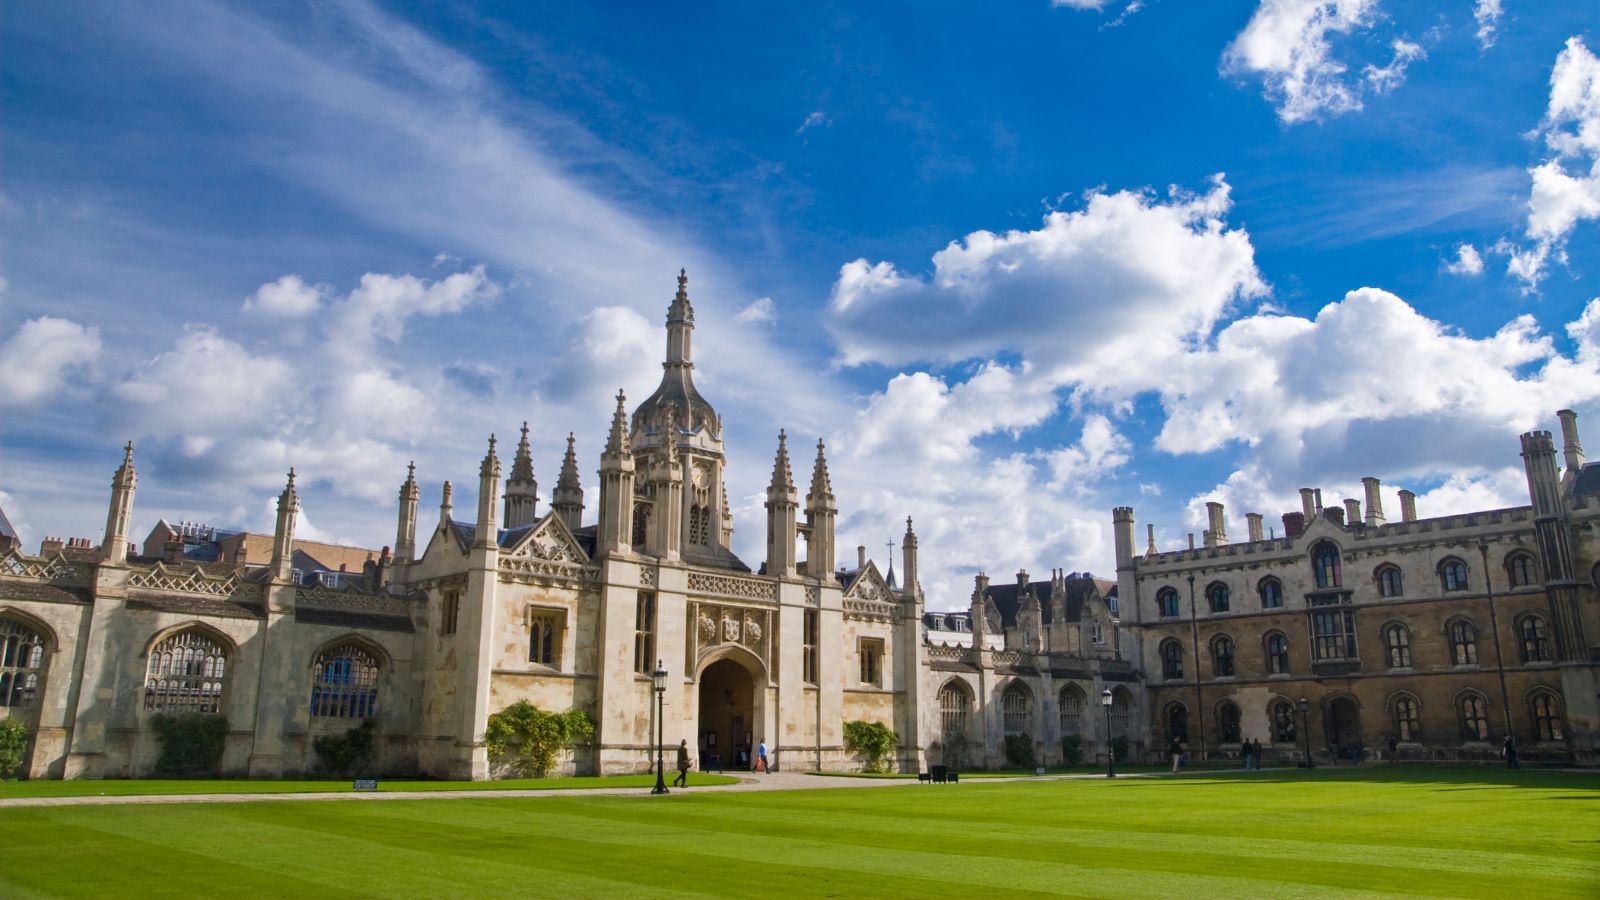 King’s College, Cambridge University